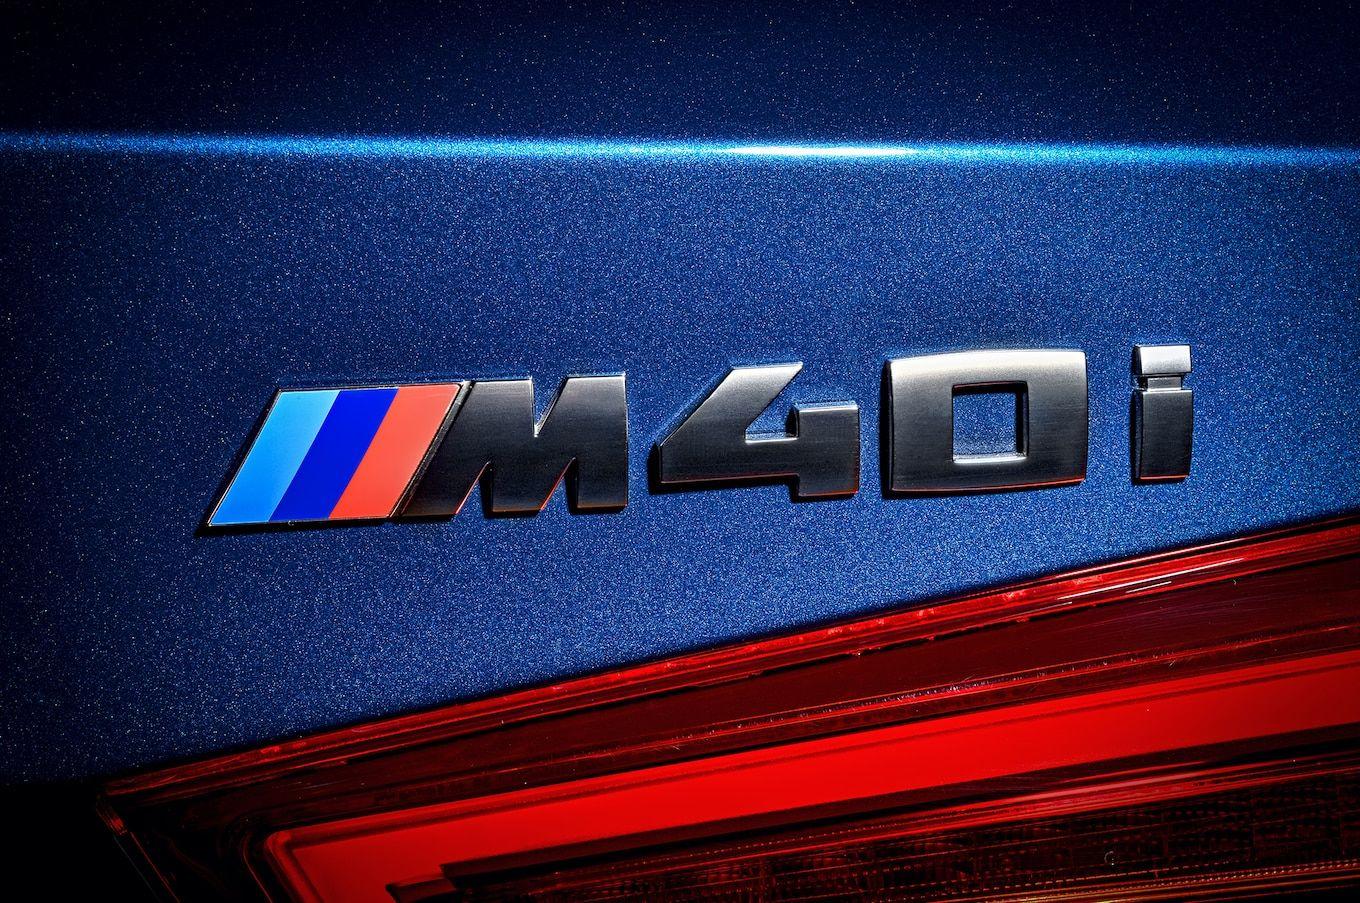 2018 BMW Logo - BMW X3 M40i logo